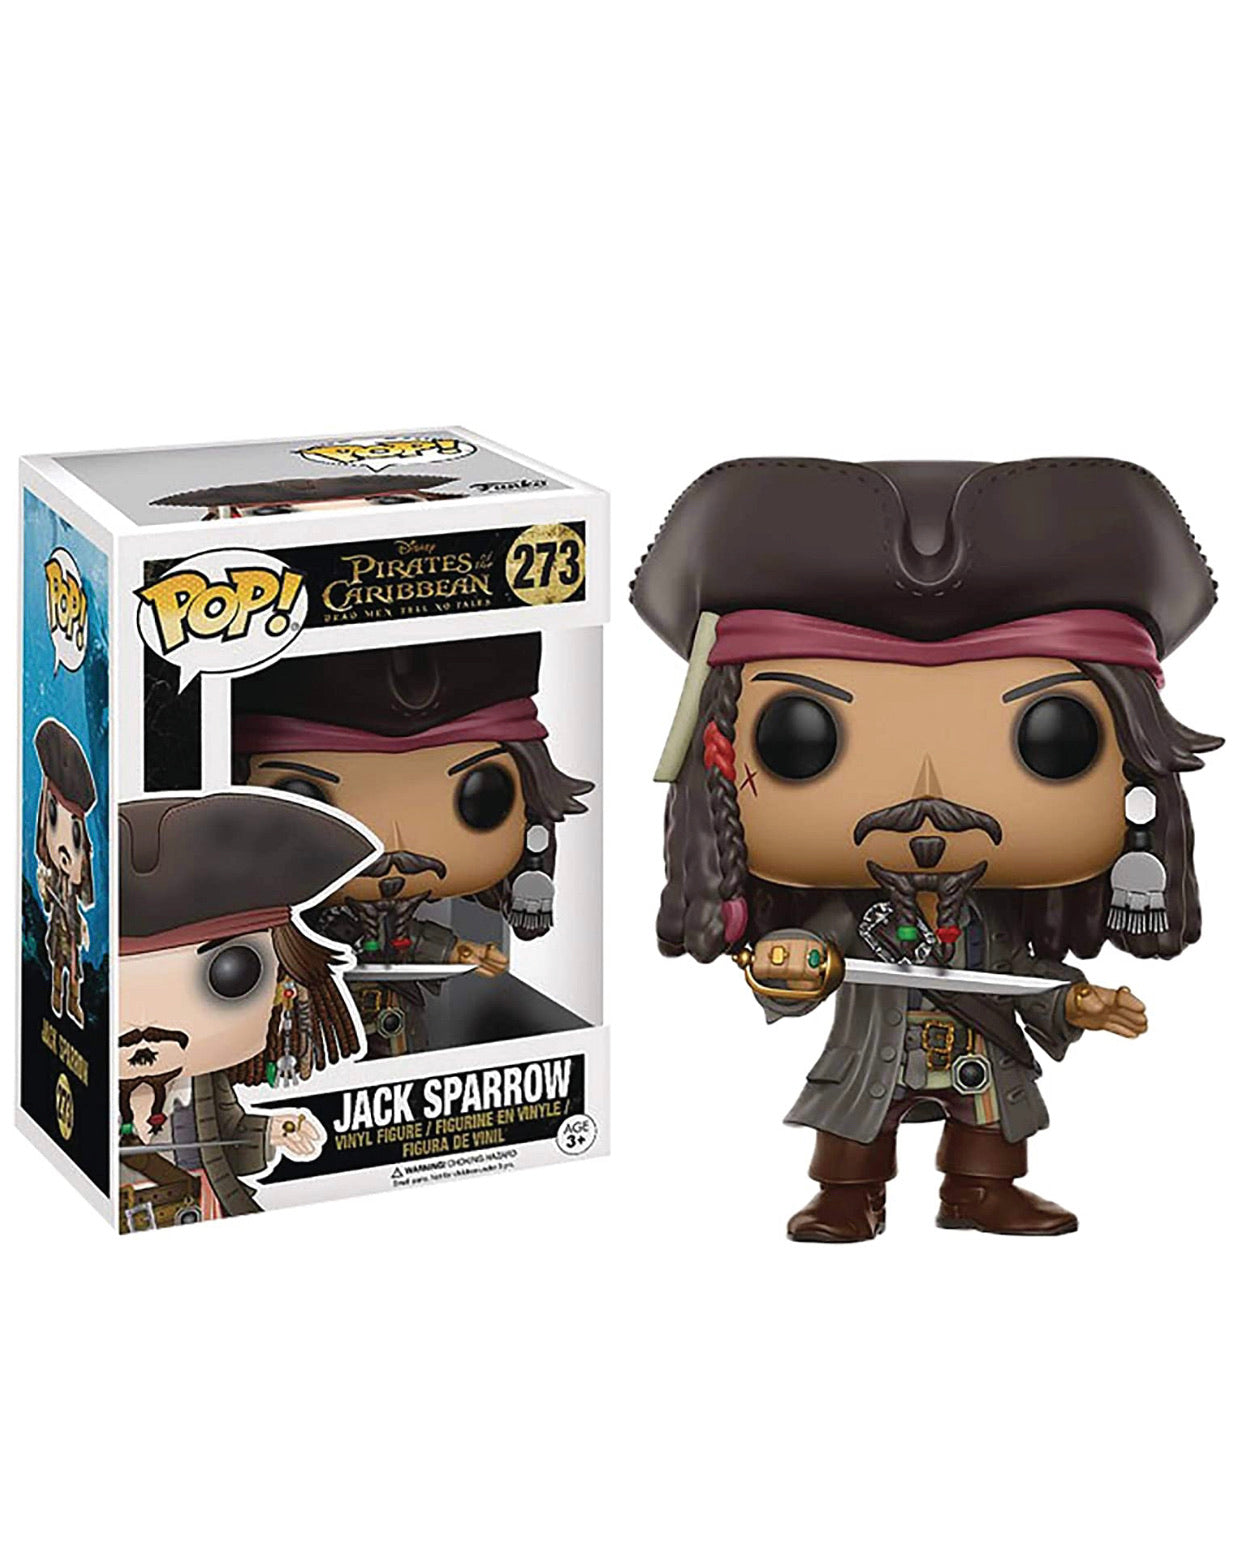 Piratas Del Caribe Funko Jack Sparrow